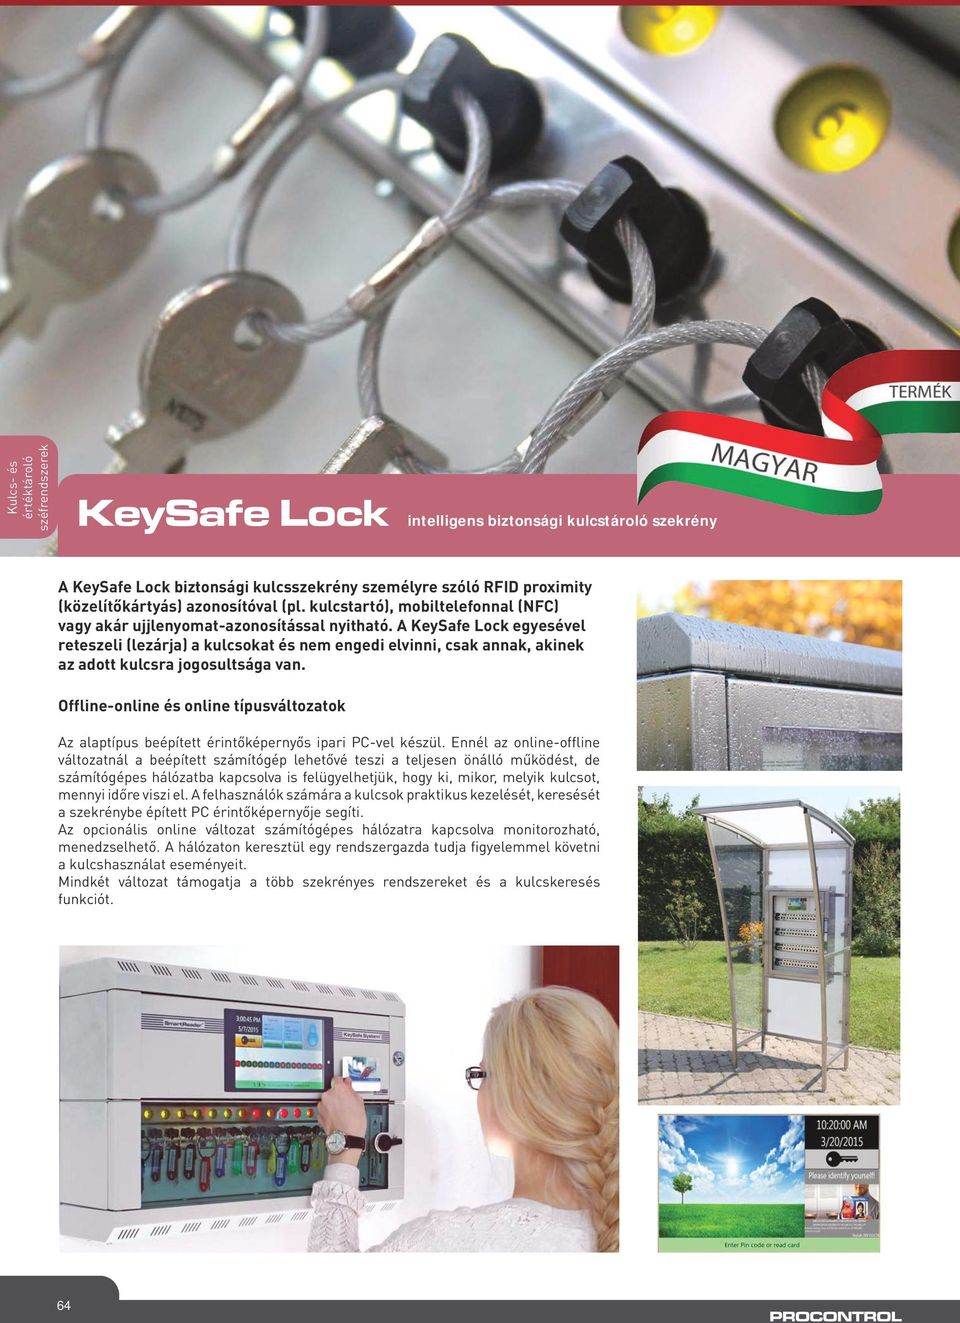 A KeySafe Lock egyesével reteszeli (lezárja) a kulcsokat és nem engedi elvinni, csak annak, akinek az adott kulcsra jogosultsága van.